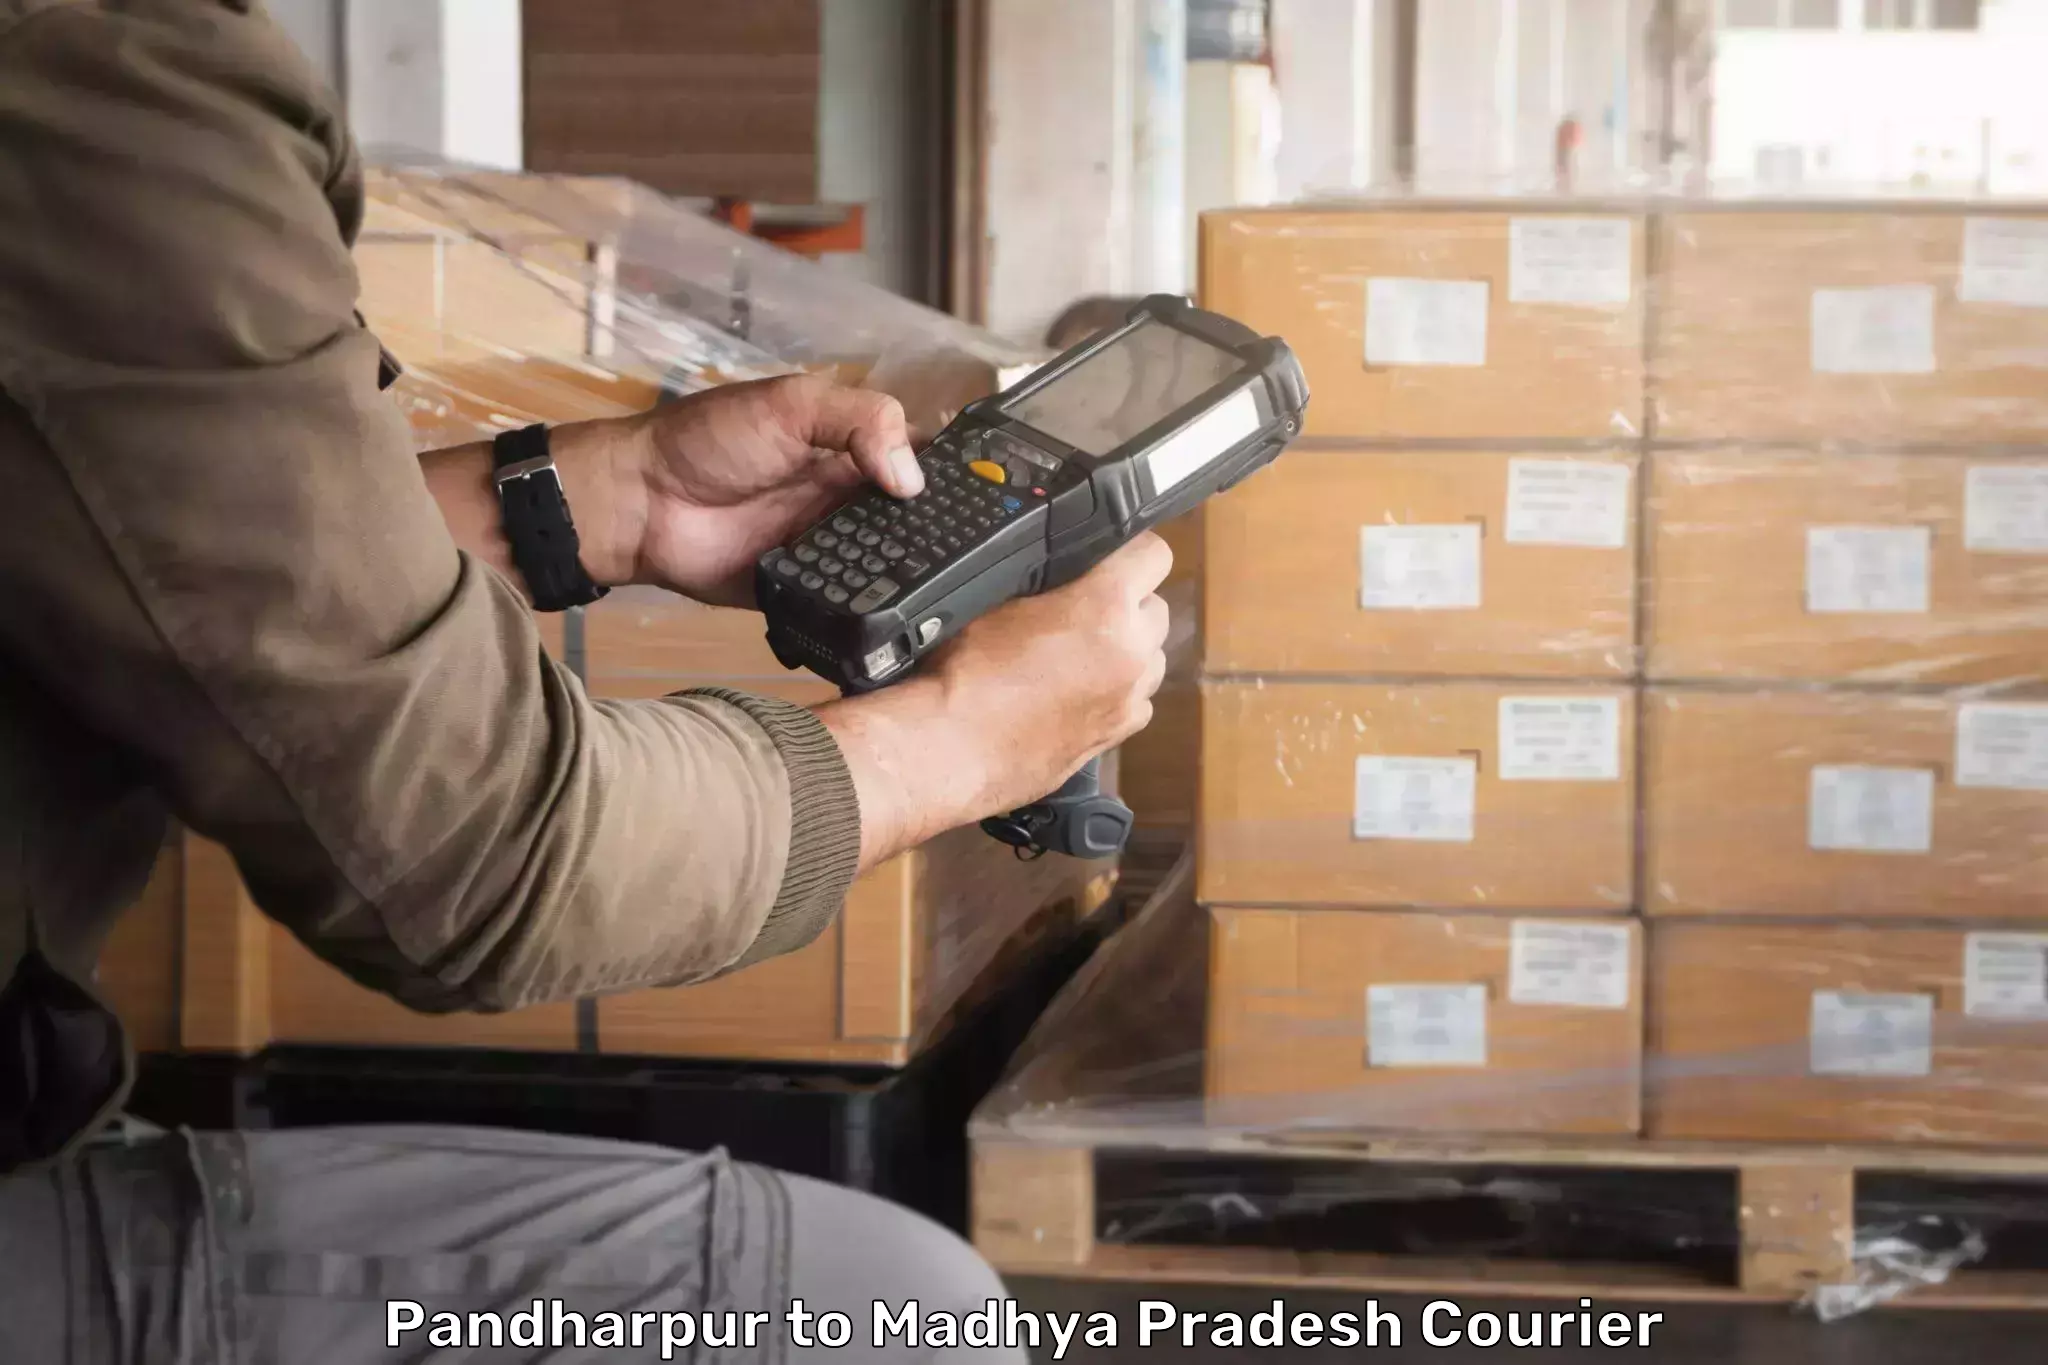 Full-service courier options Pandharpur to Jaitwara